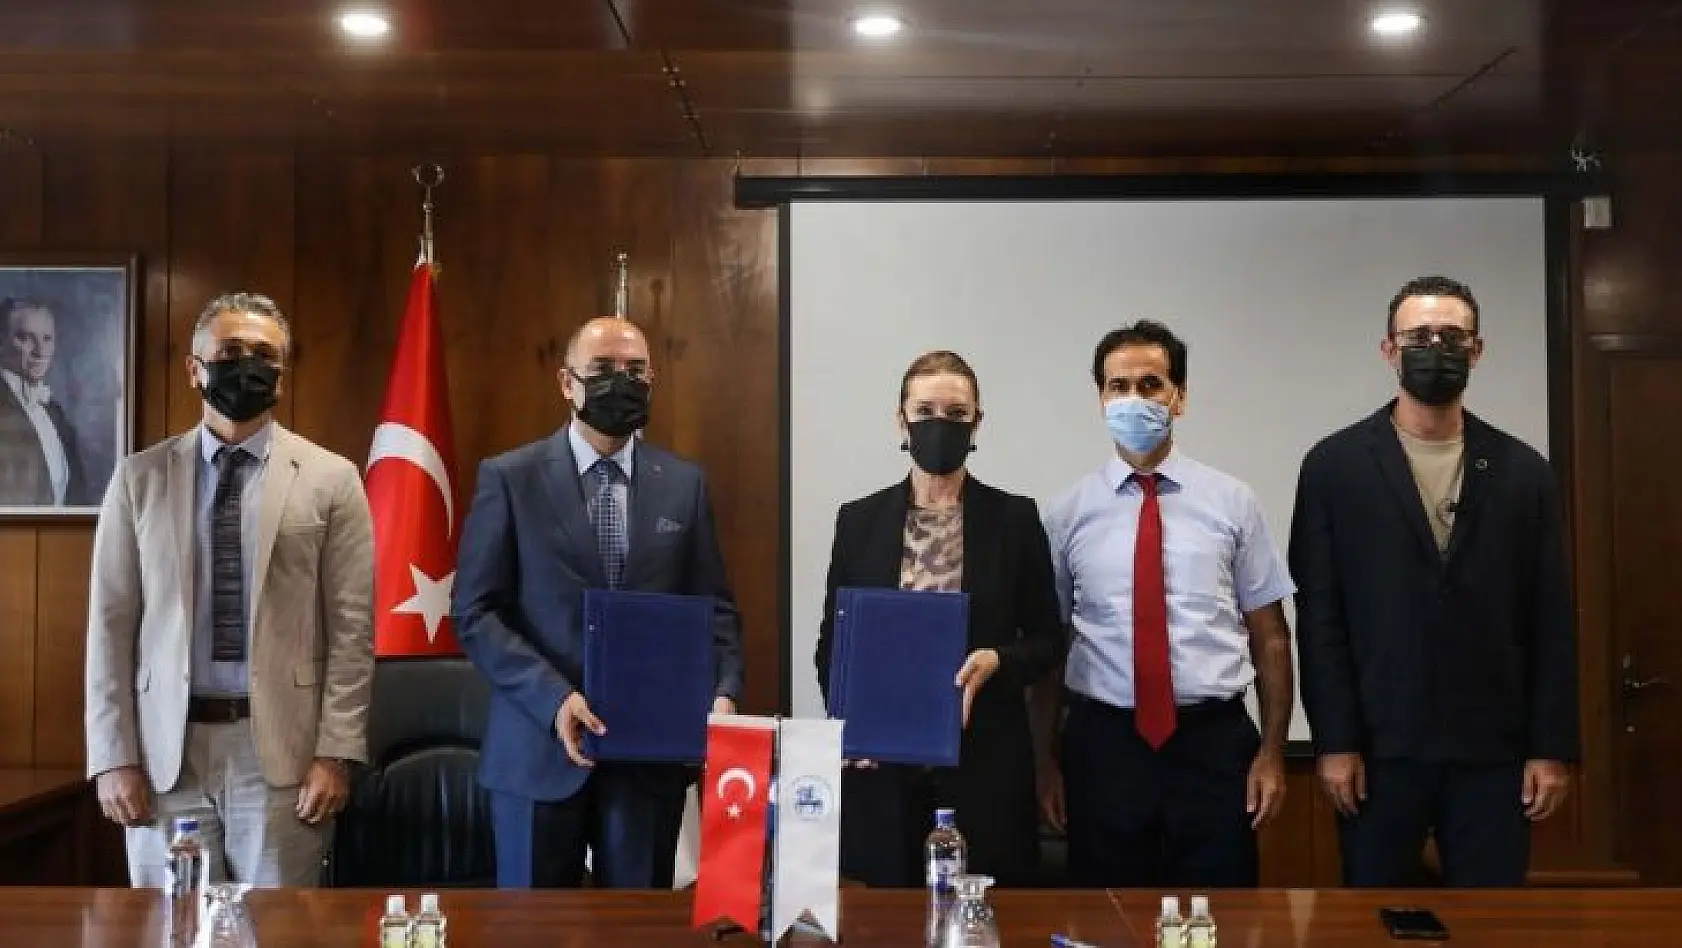 İzmir'in iki köklü kurumundan iş birliği protokolü